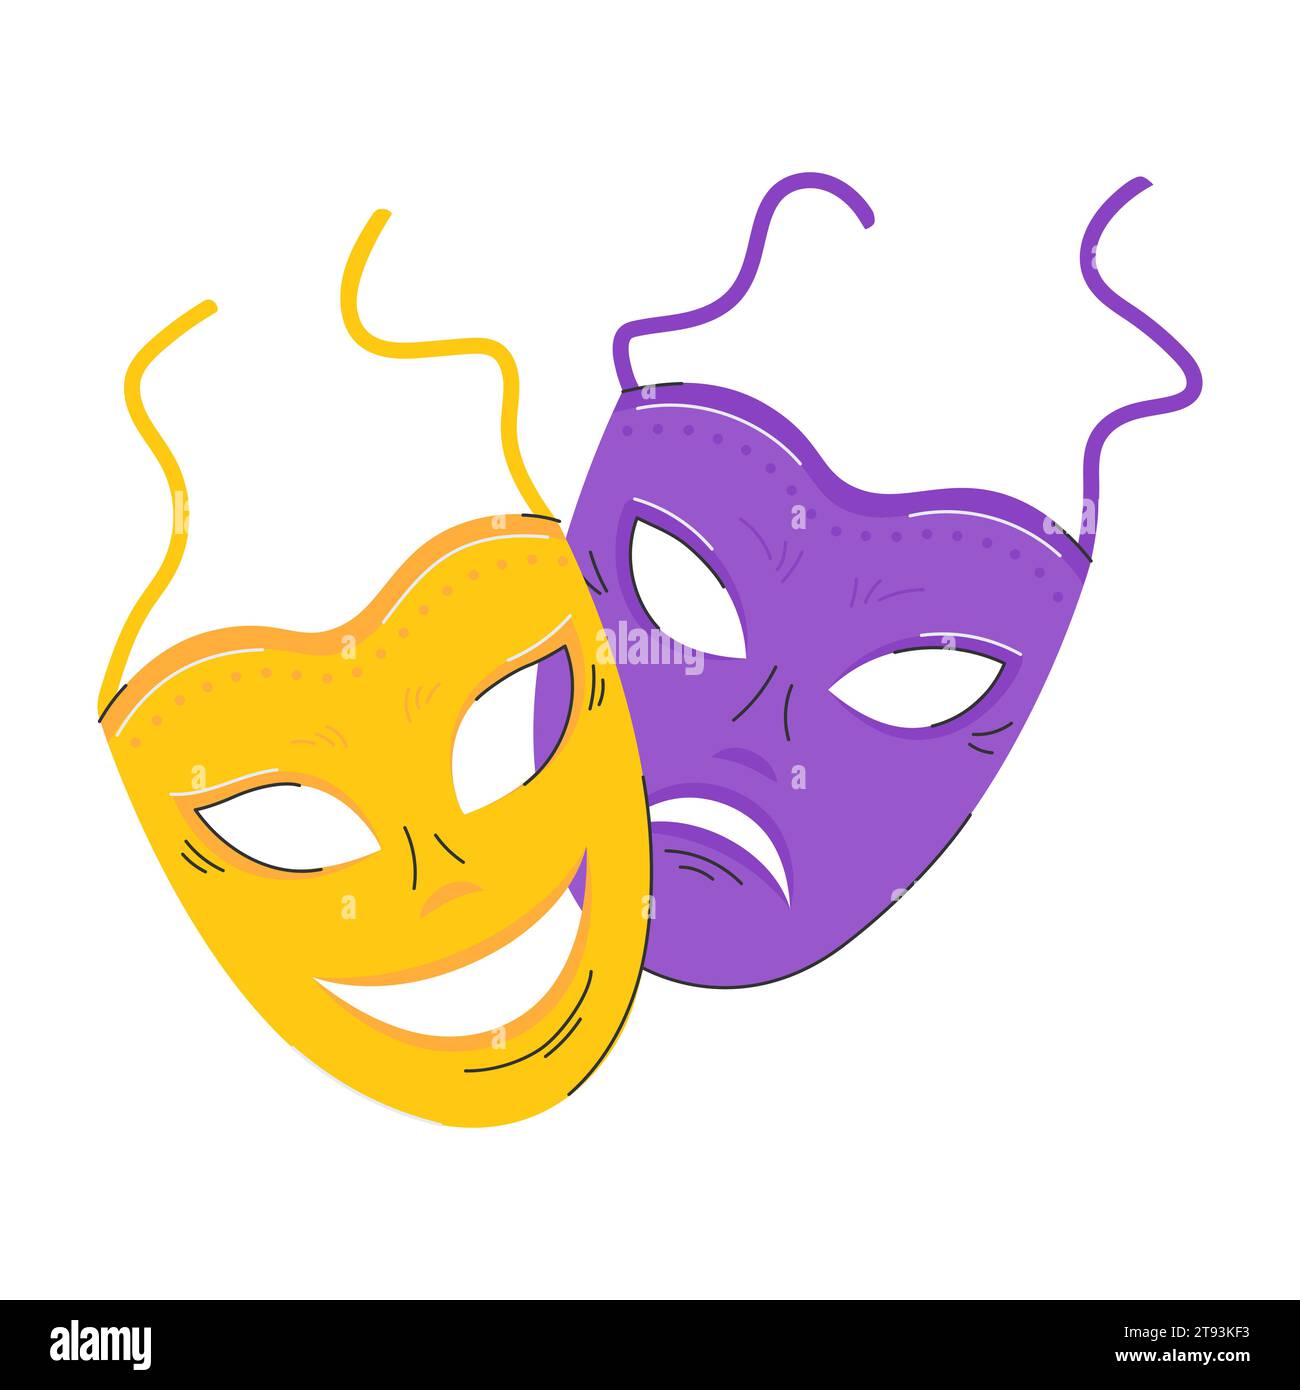 Comic und tragisches Maskensymbol. Maskerade, Theatermasken. Ein Element eines Karnevalskostüms. Das Symbol des Mardi Gras, des brasilianischen Karnevals. Flache Vec Stock Vektor